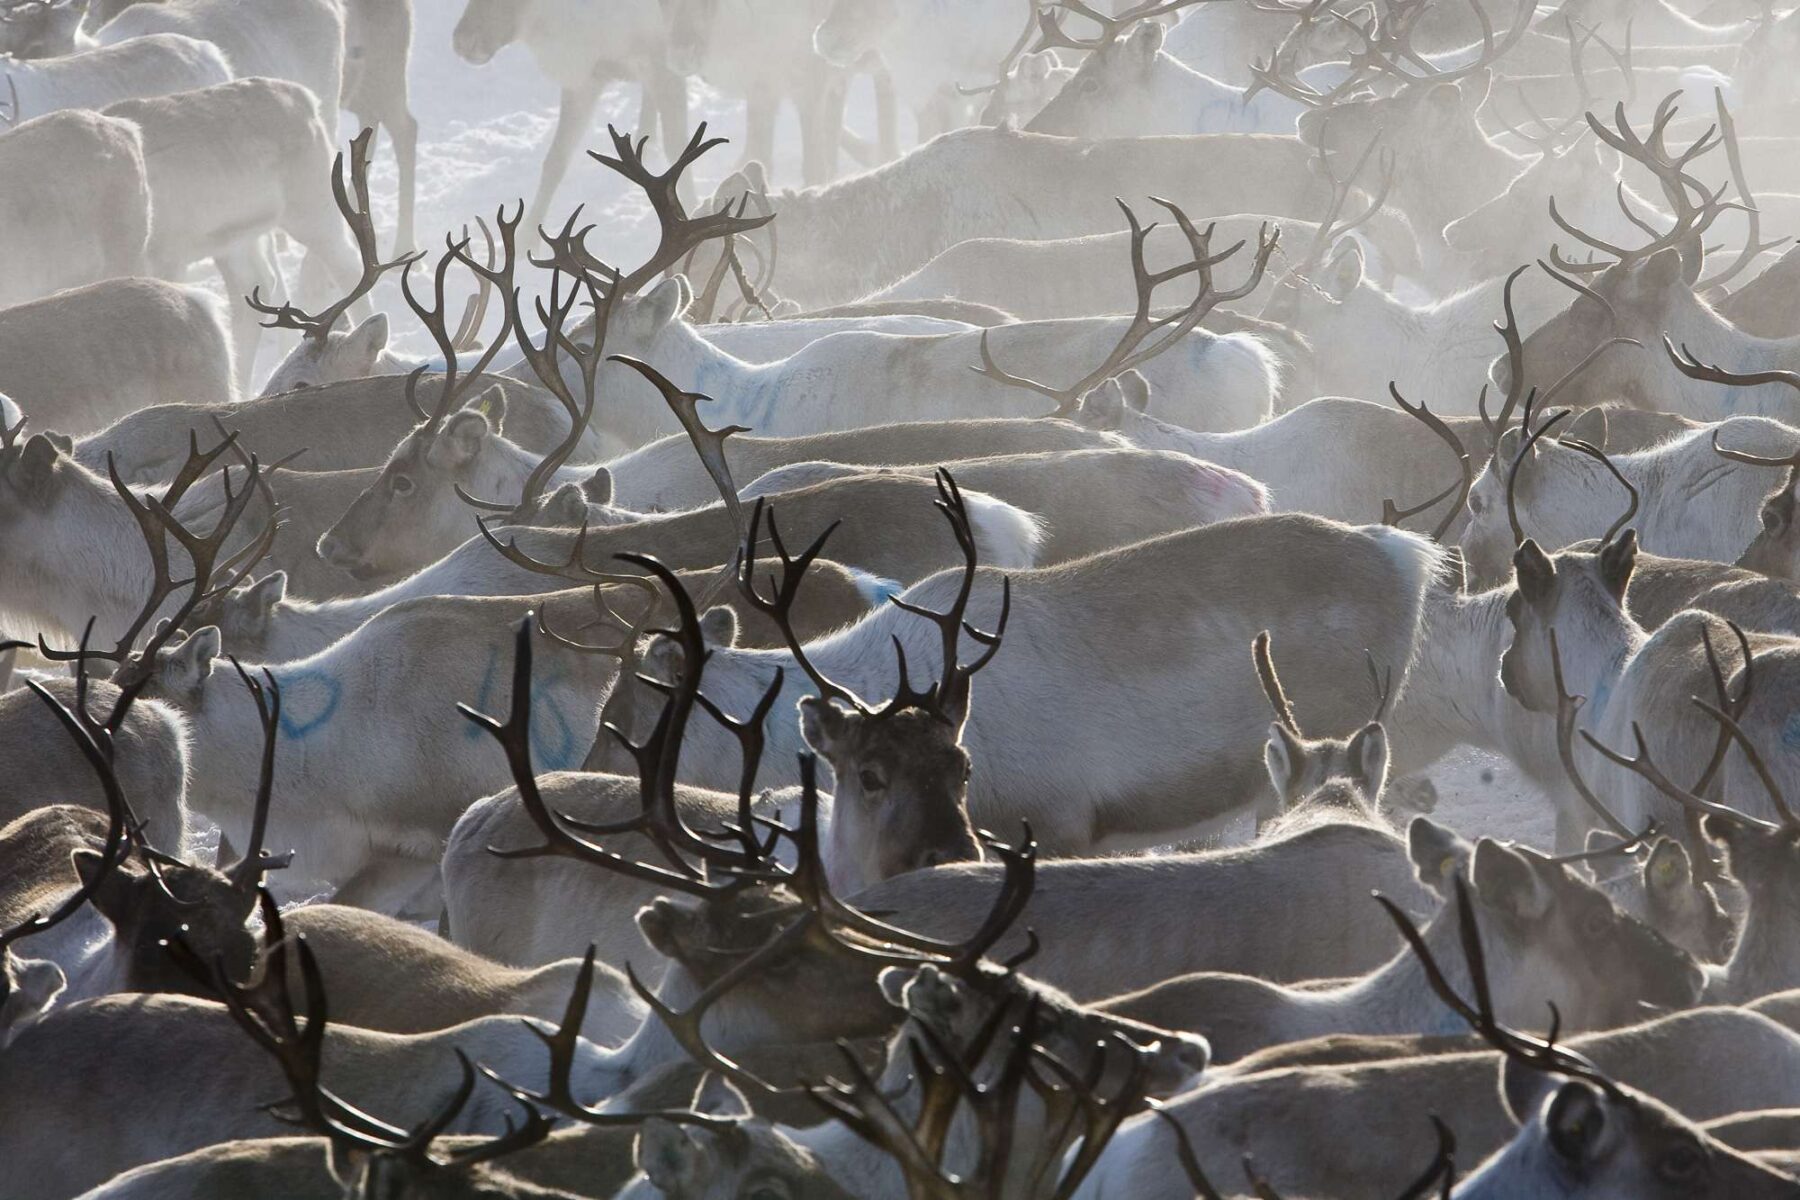 finnish lapland reindeer herd lmb